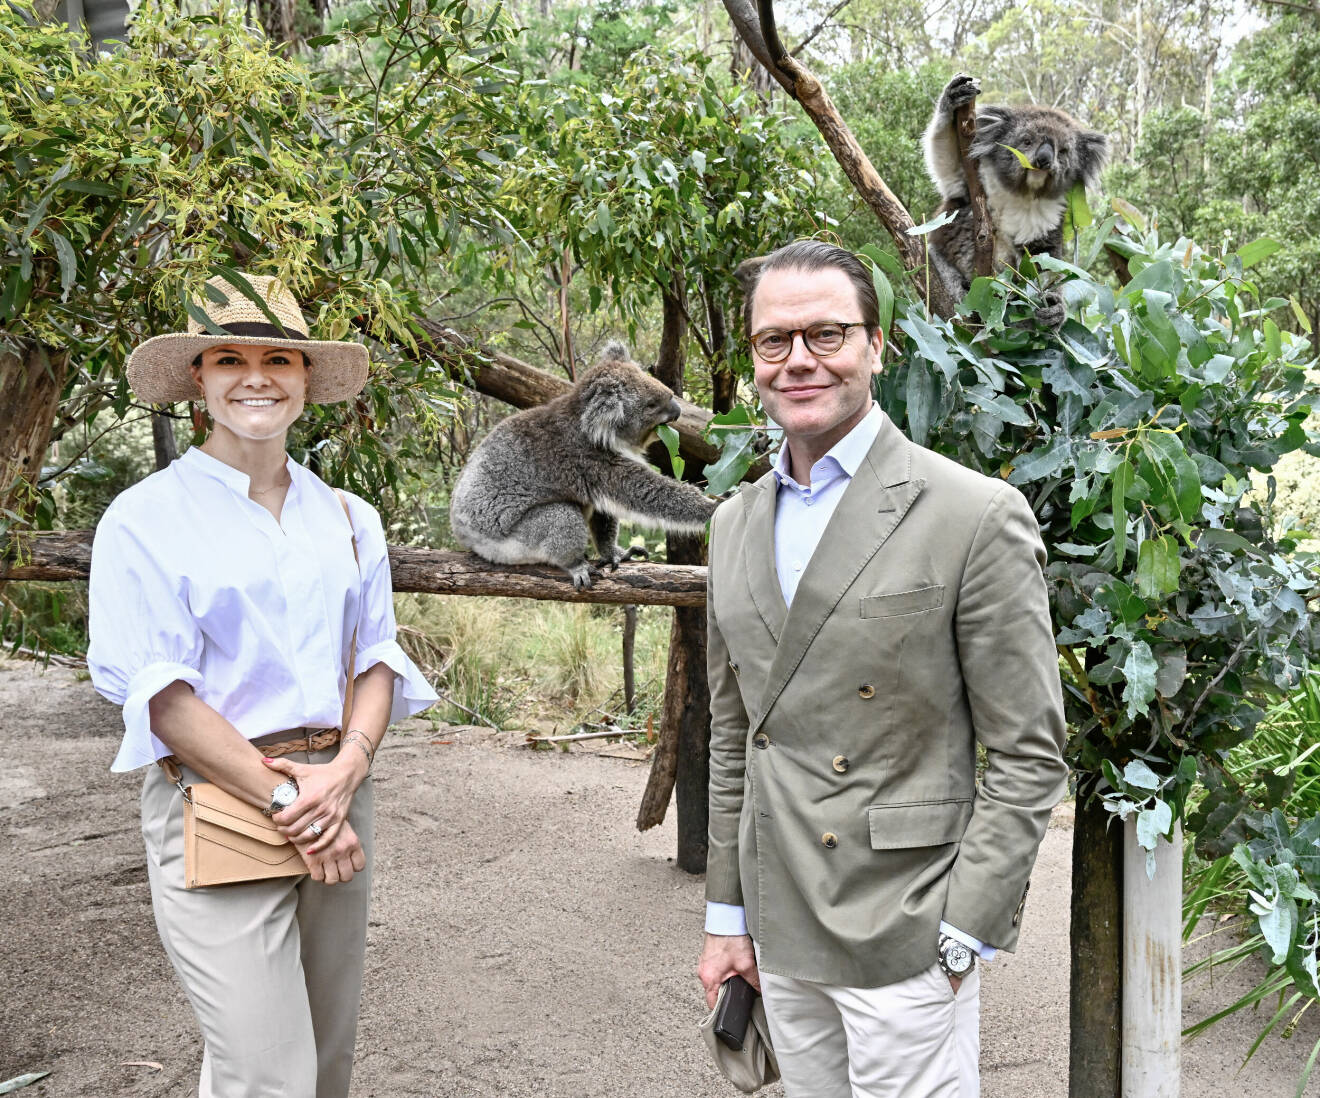 Kronprinsessan Victoria och prins Daniel inledde på måndagen det officiella besöket i Australien där kronprinsessparet besökte ett rehabiliteringscenter för koalor i Namadgi National Park i Canberra.